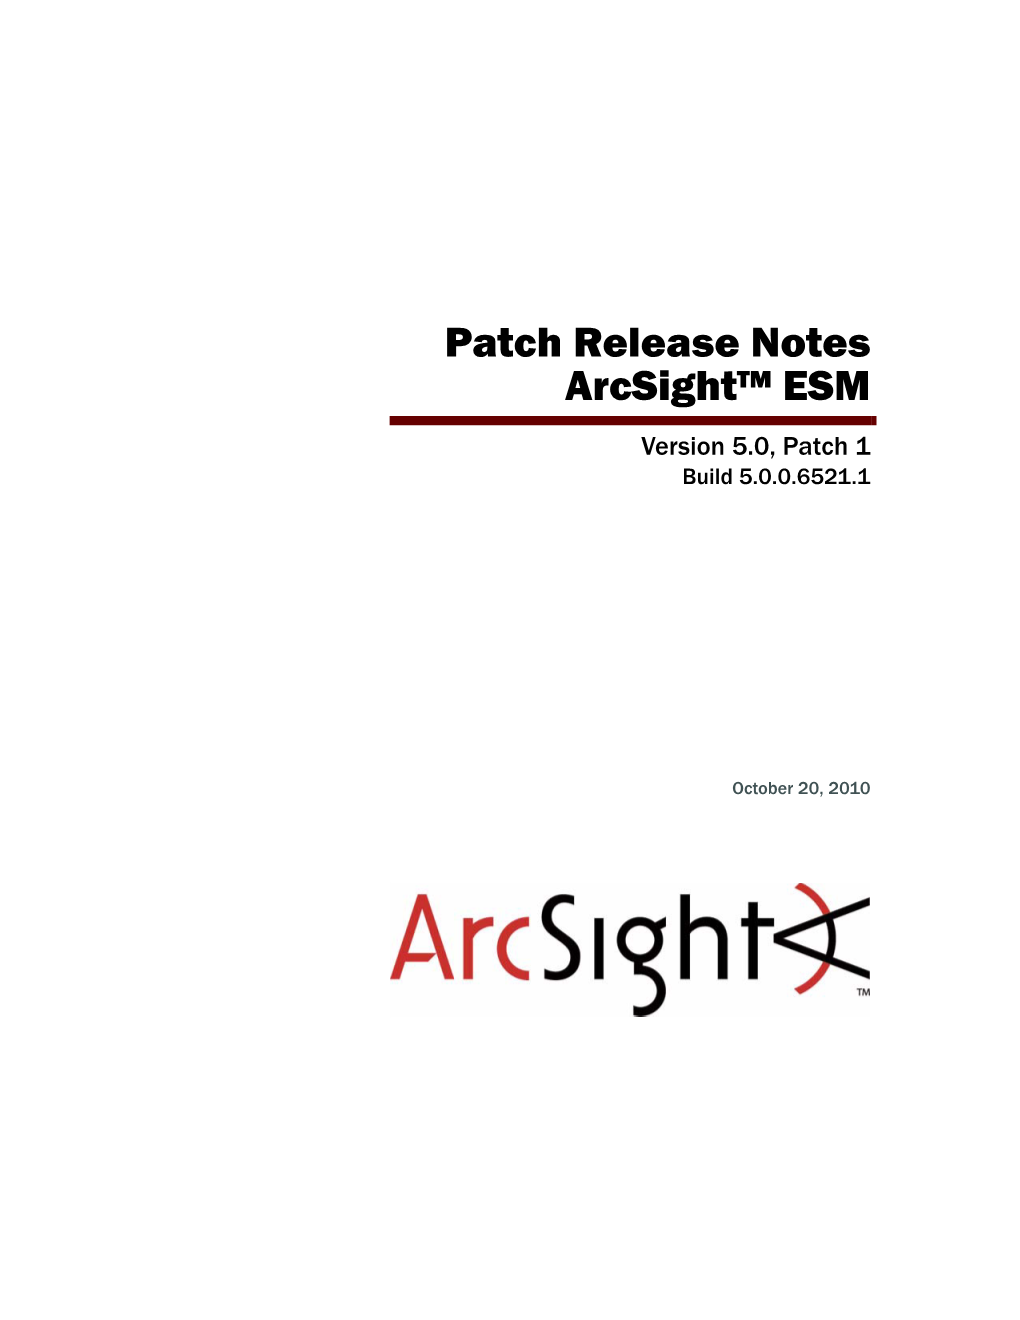 Patch Release Notes Arcsight™ ESM Version 5.0, Patch 1 Build 5.0.0.6521.1